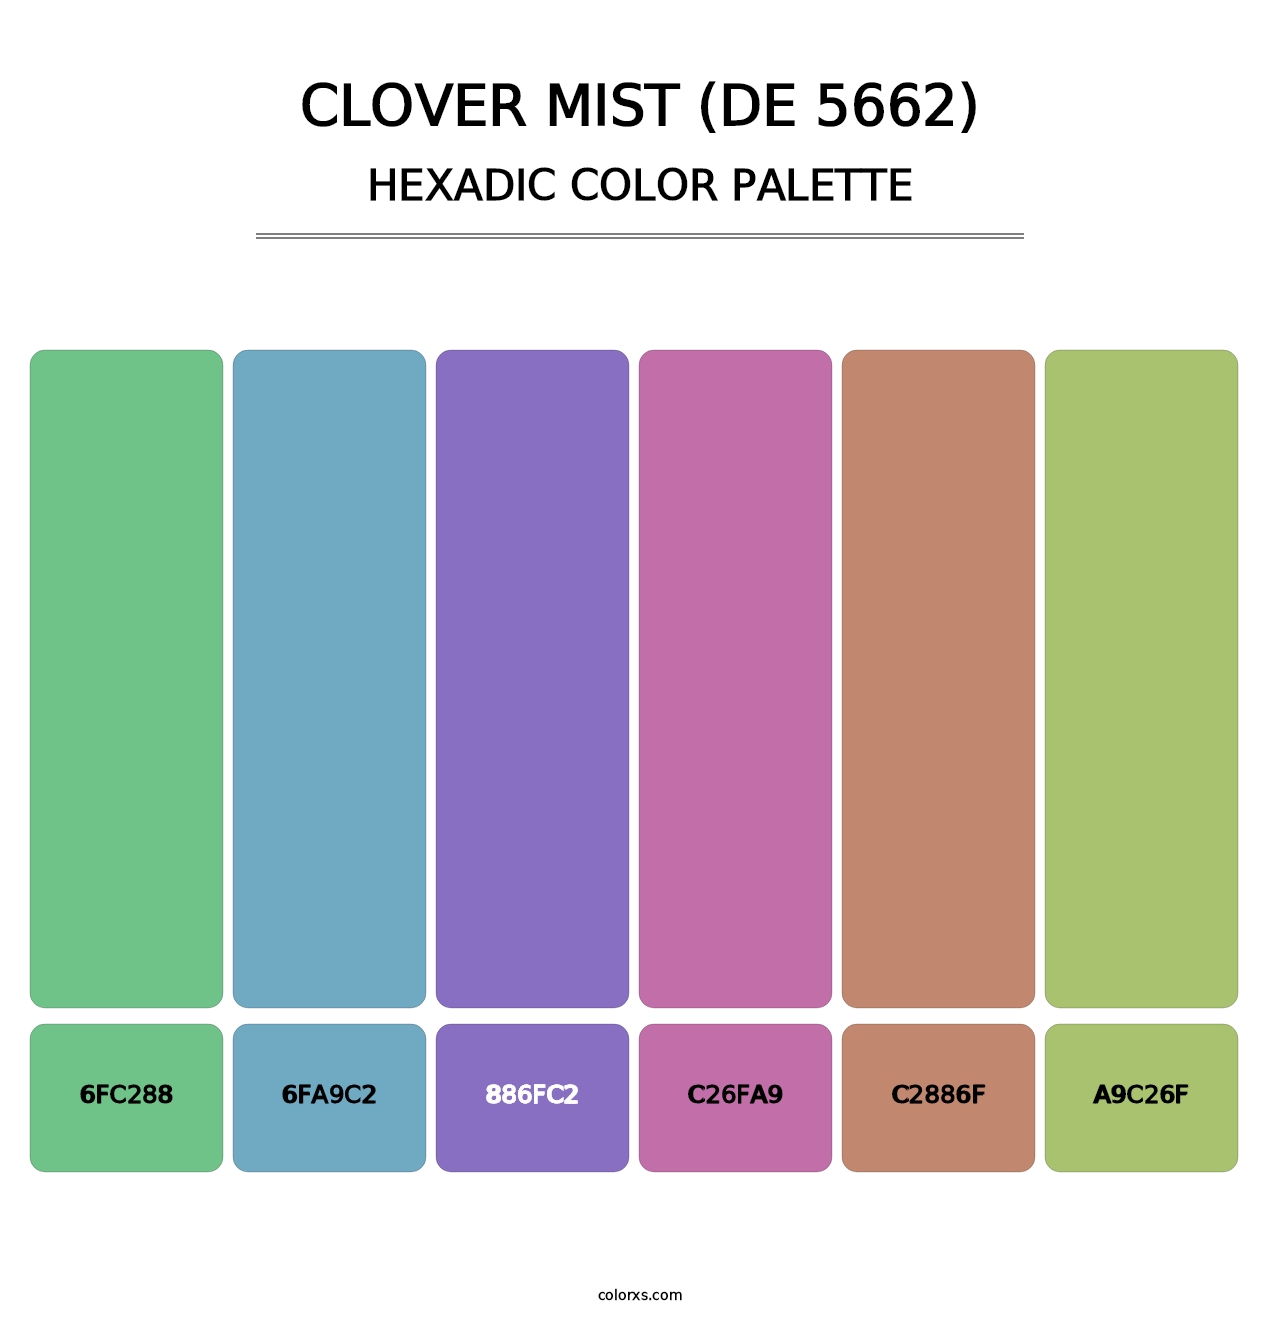 Clover Mist (DE 5662) - Hexadic Color Palette